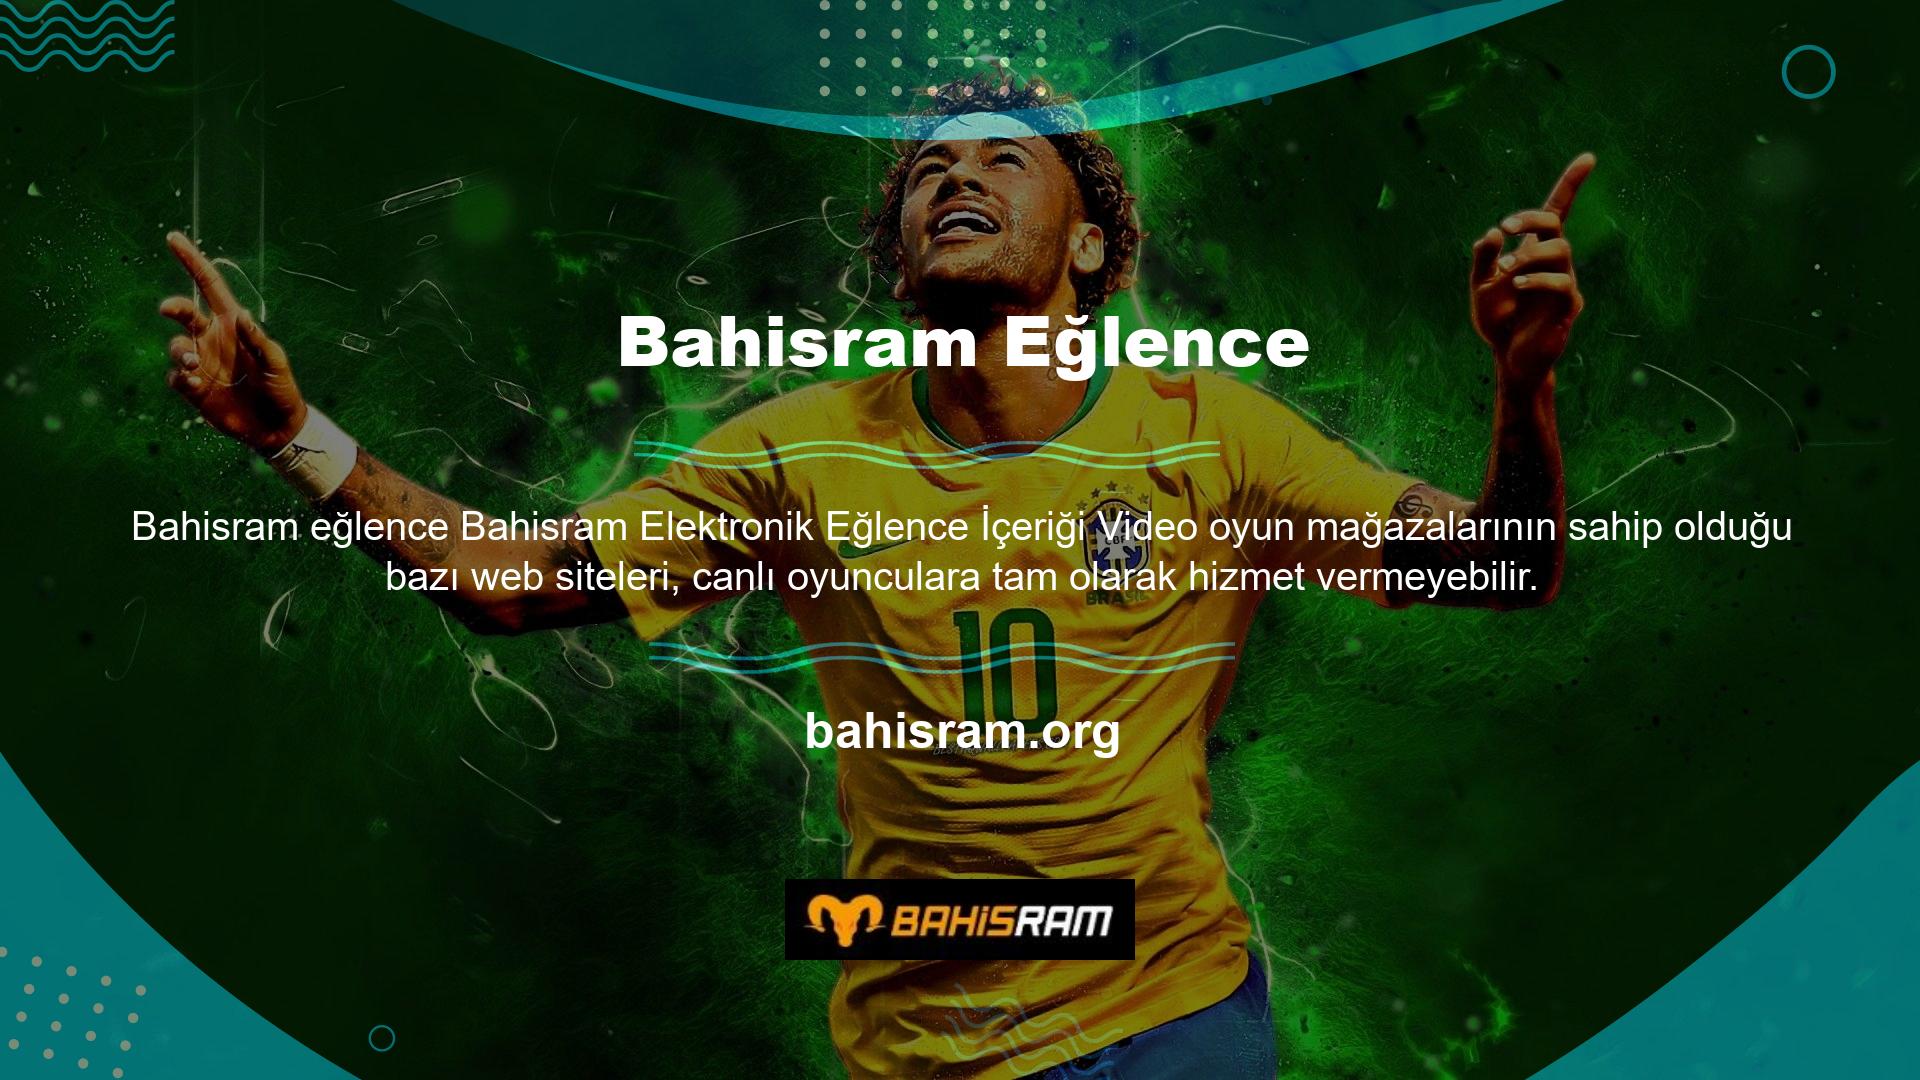 Bahisram online bahis siteleri, kullanıcılara diğer bahis türleri ile aynı yüksek kaliteli ve kazançlı hizmetleri sunar